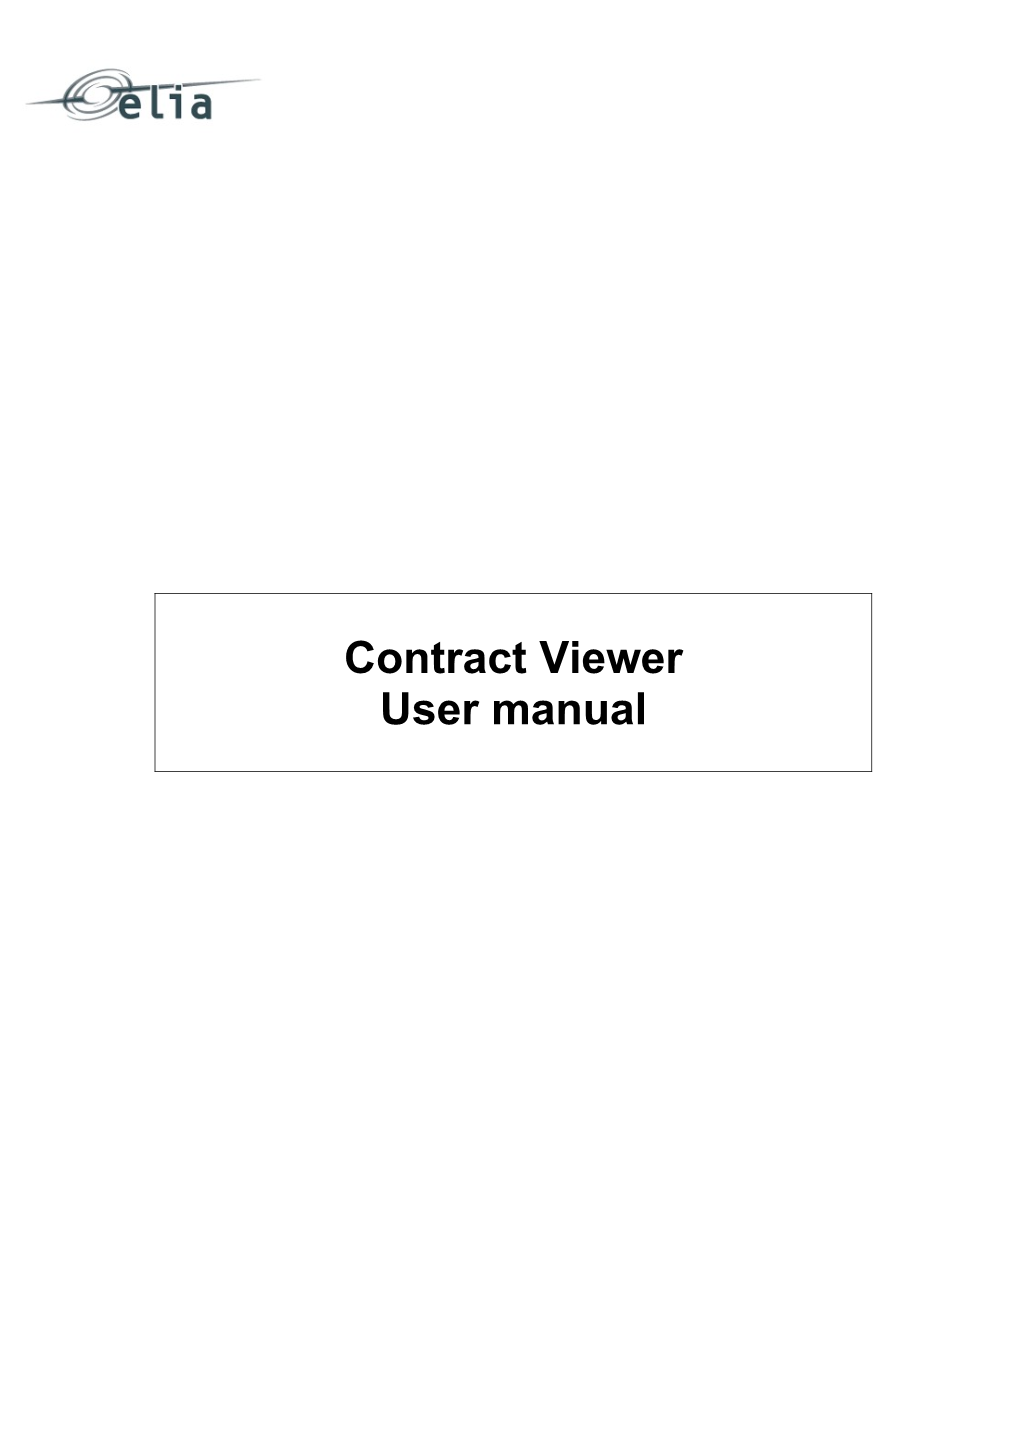 User Manual Contract Viewer EN